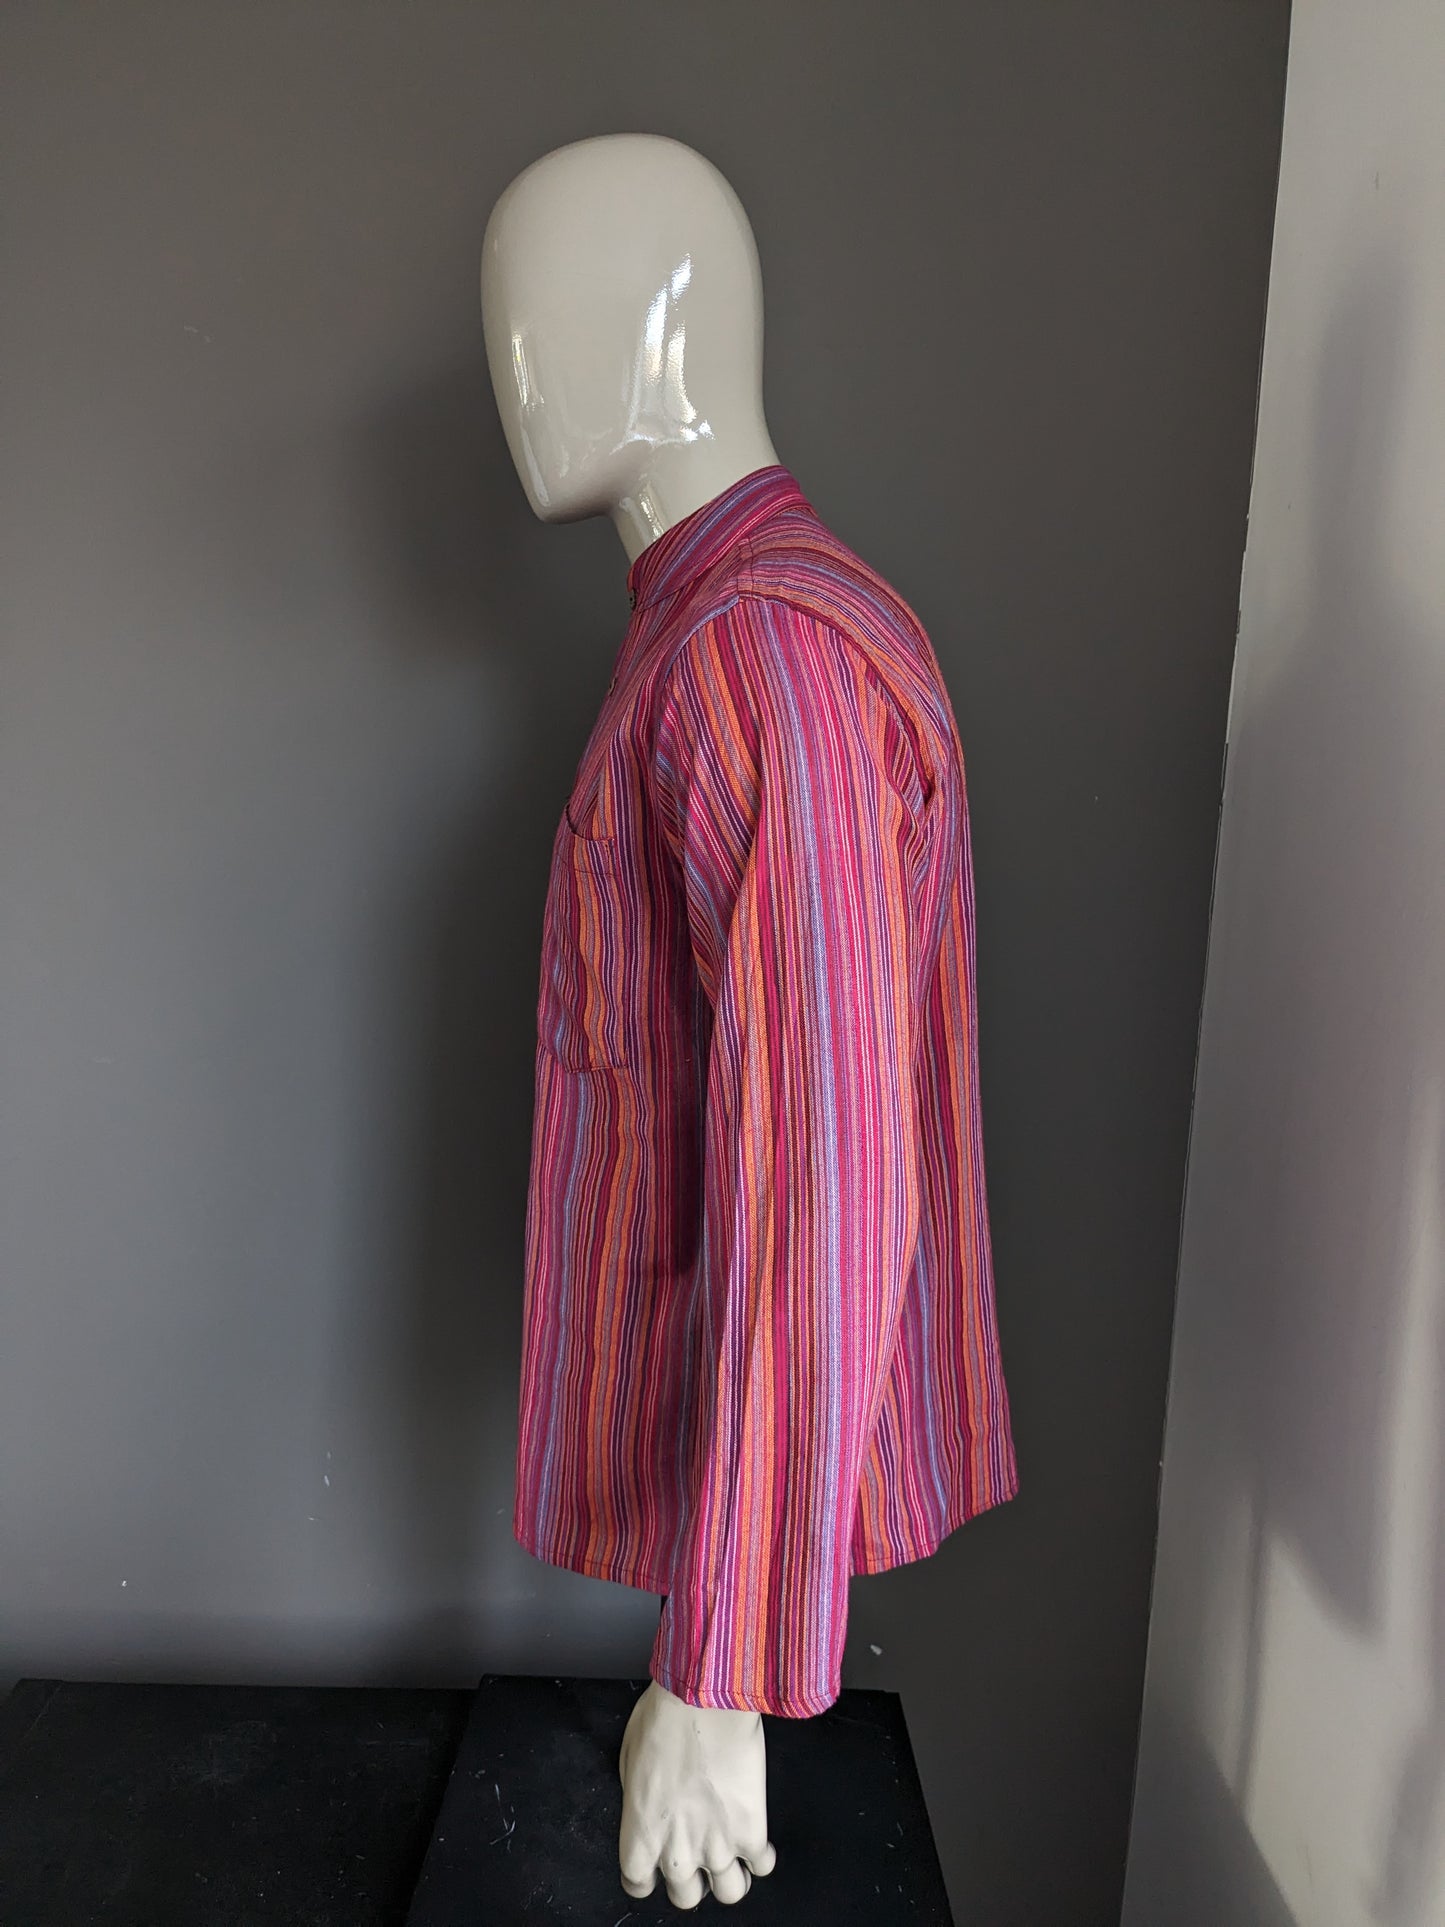 Vintage Modas Bagdad Polotrui / Camisa con collar MAO / Standing / Farmer. Rayado rojo / de color. Talla L.